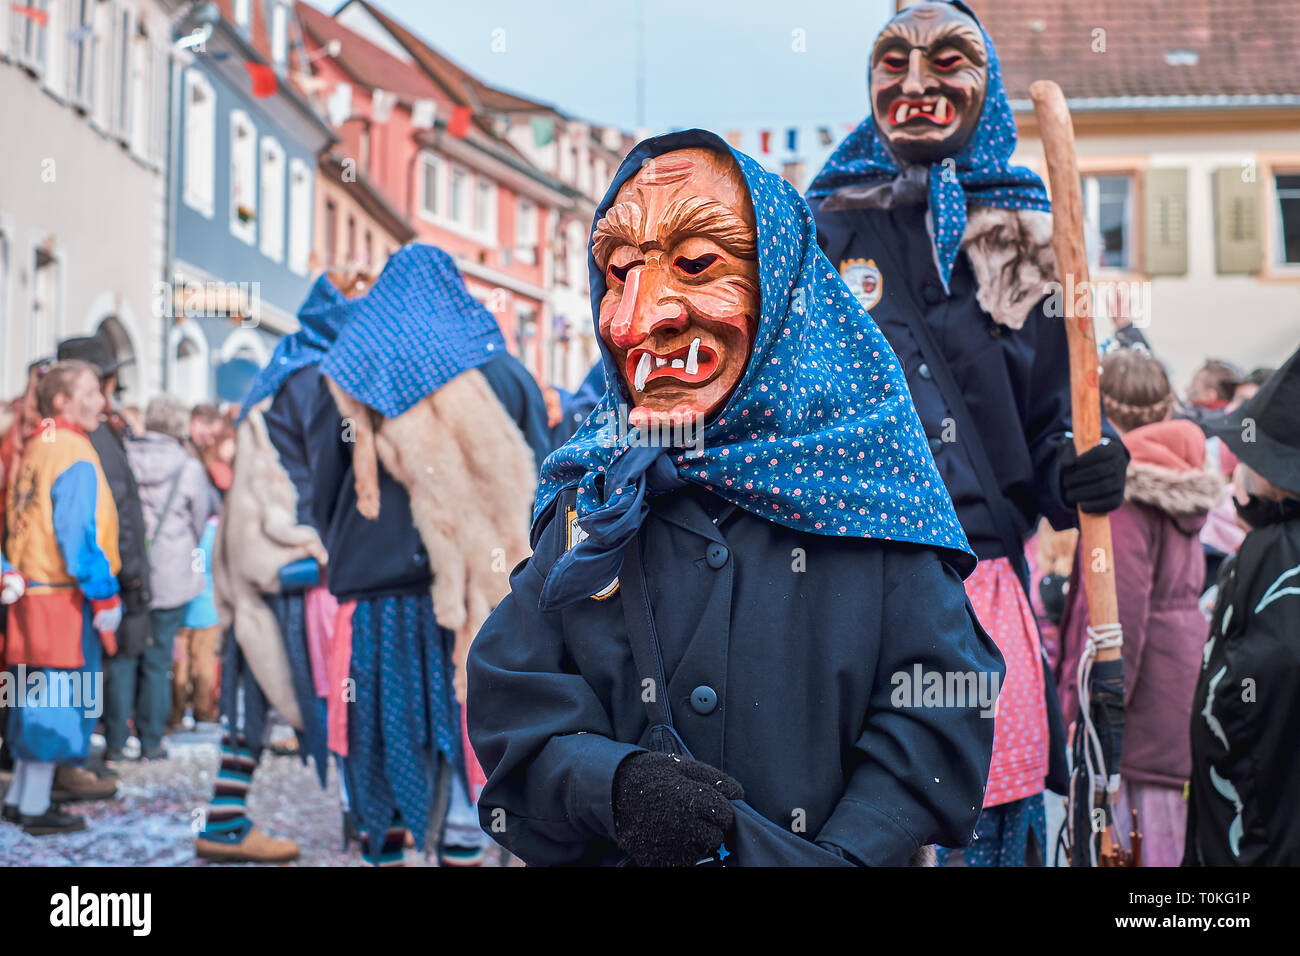 Petite sorcière en robe bleue. Carnaval de rue dans le sud de l'Allemagne - Forêt Noire. Banque D'Images